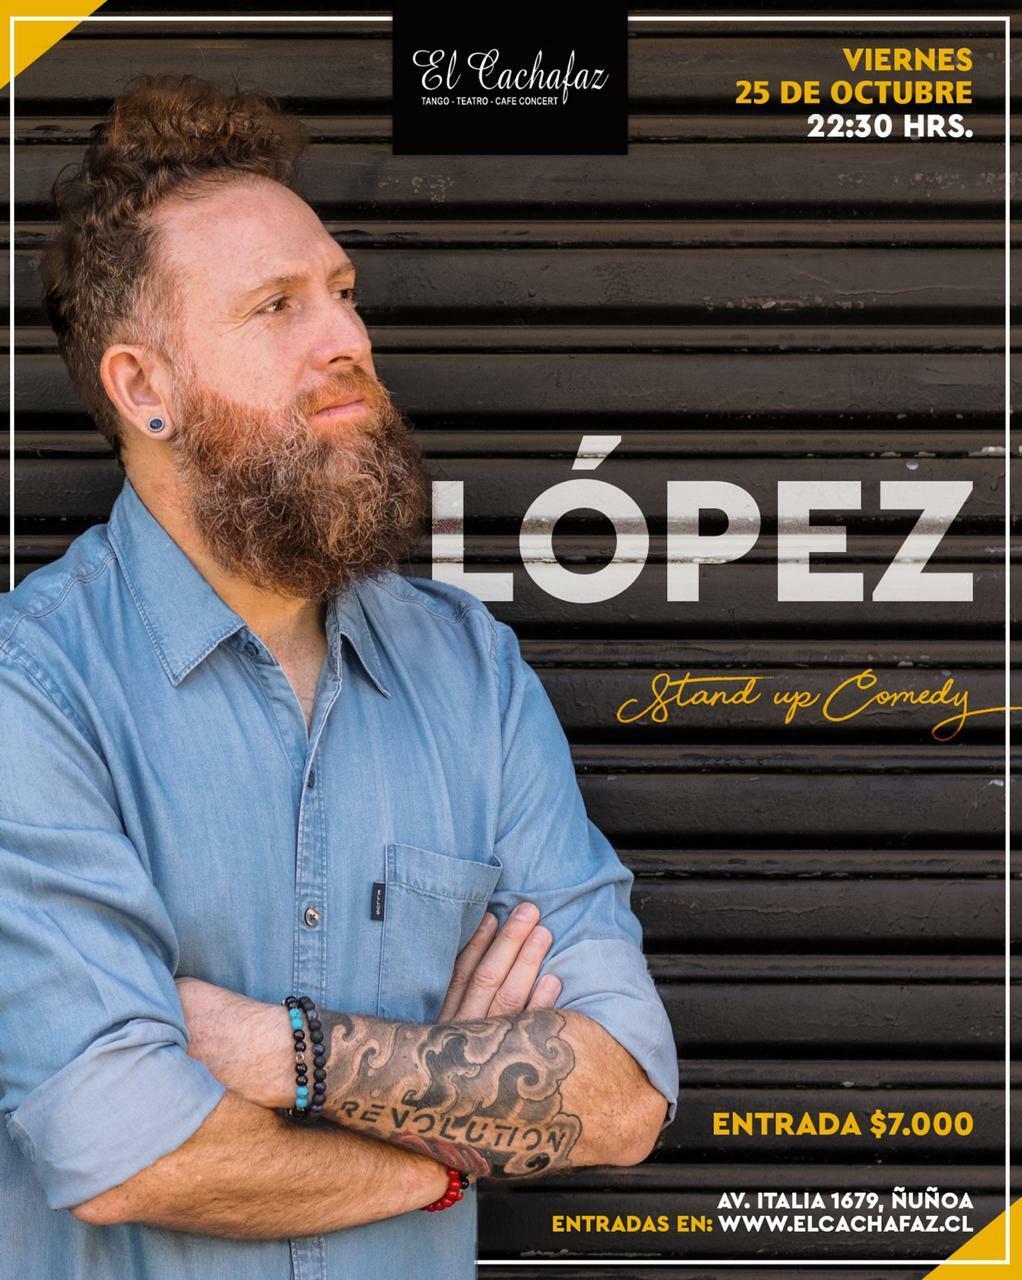 López - Stand Up Comedy en El Cachafaz